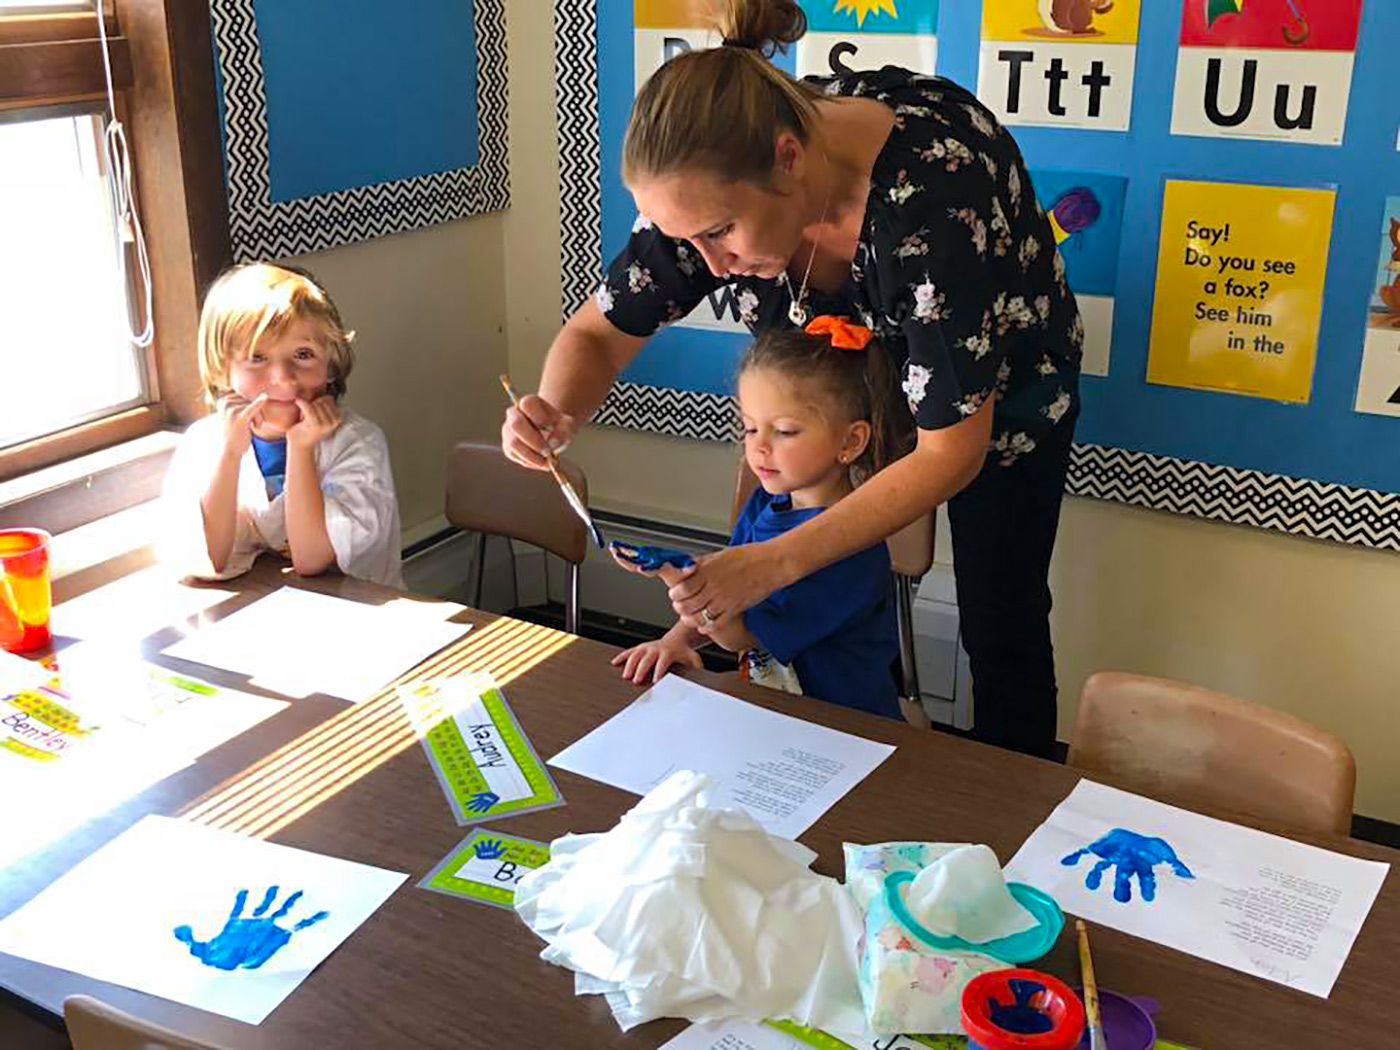 Teacher helping student paint her hand.